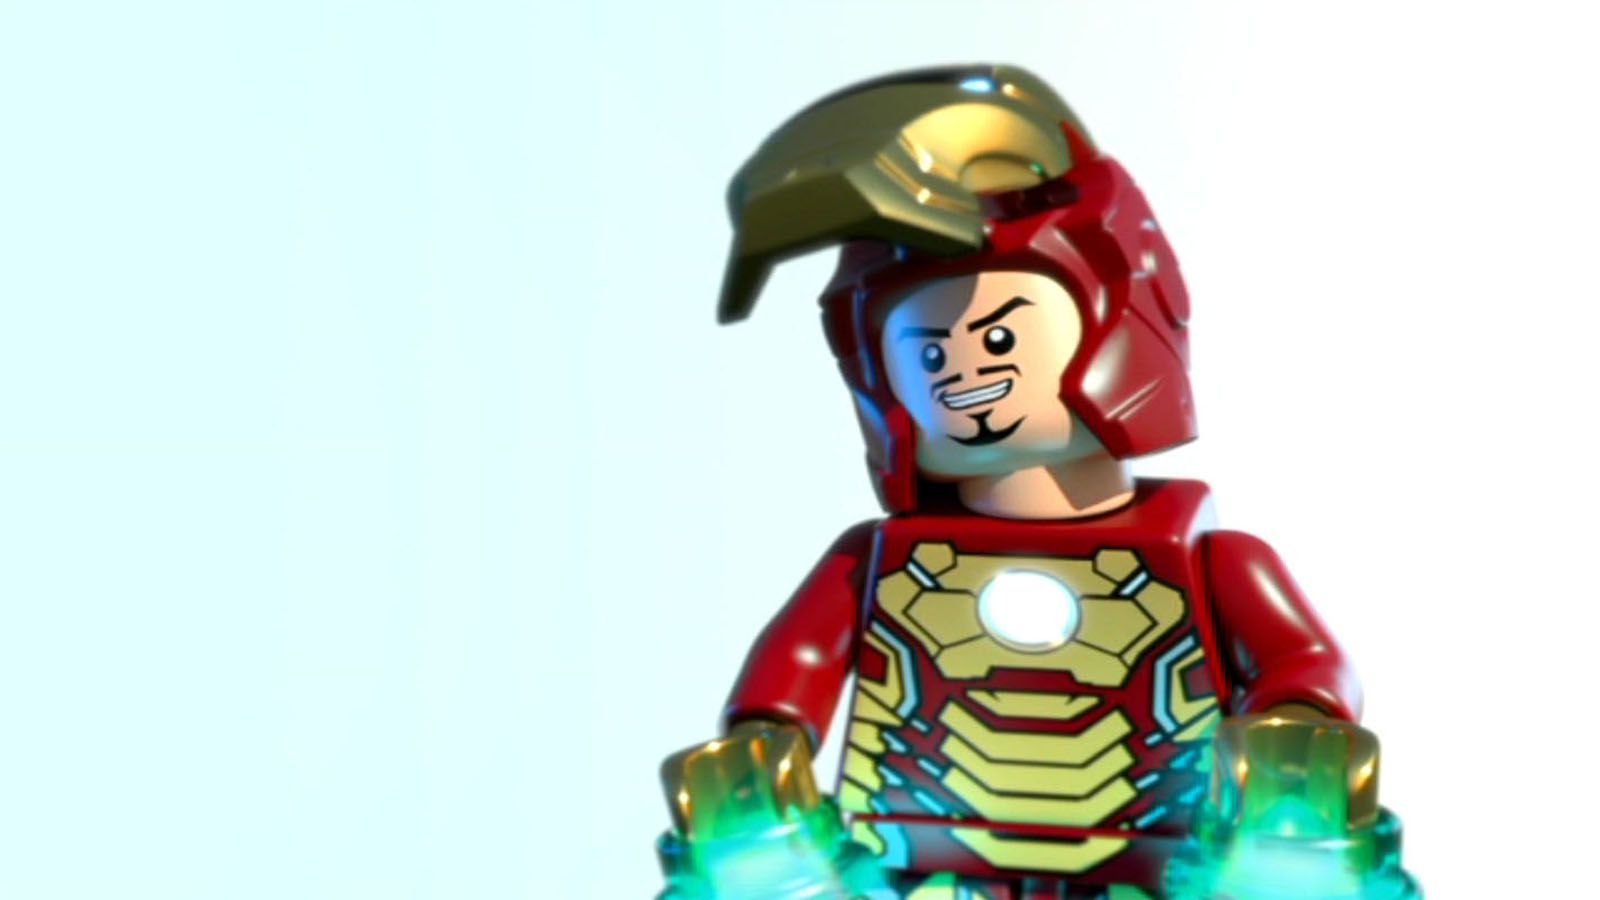 LEGO Iron Man Wallpaper Free LEGO Iron Man Background